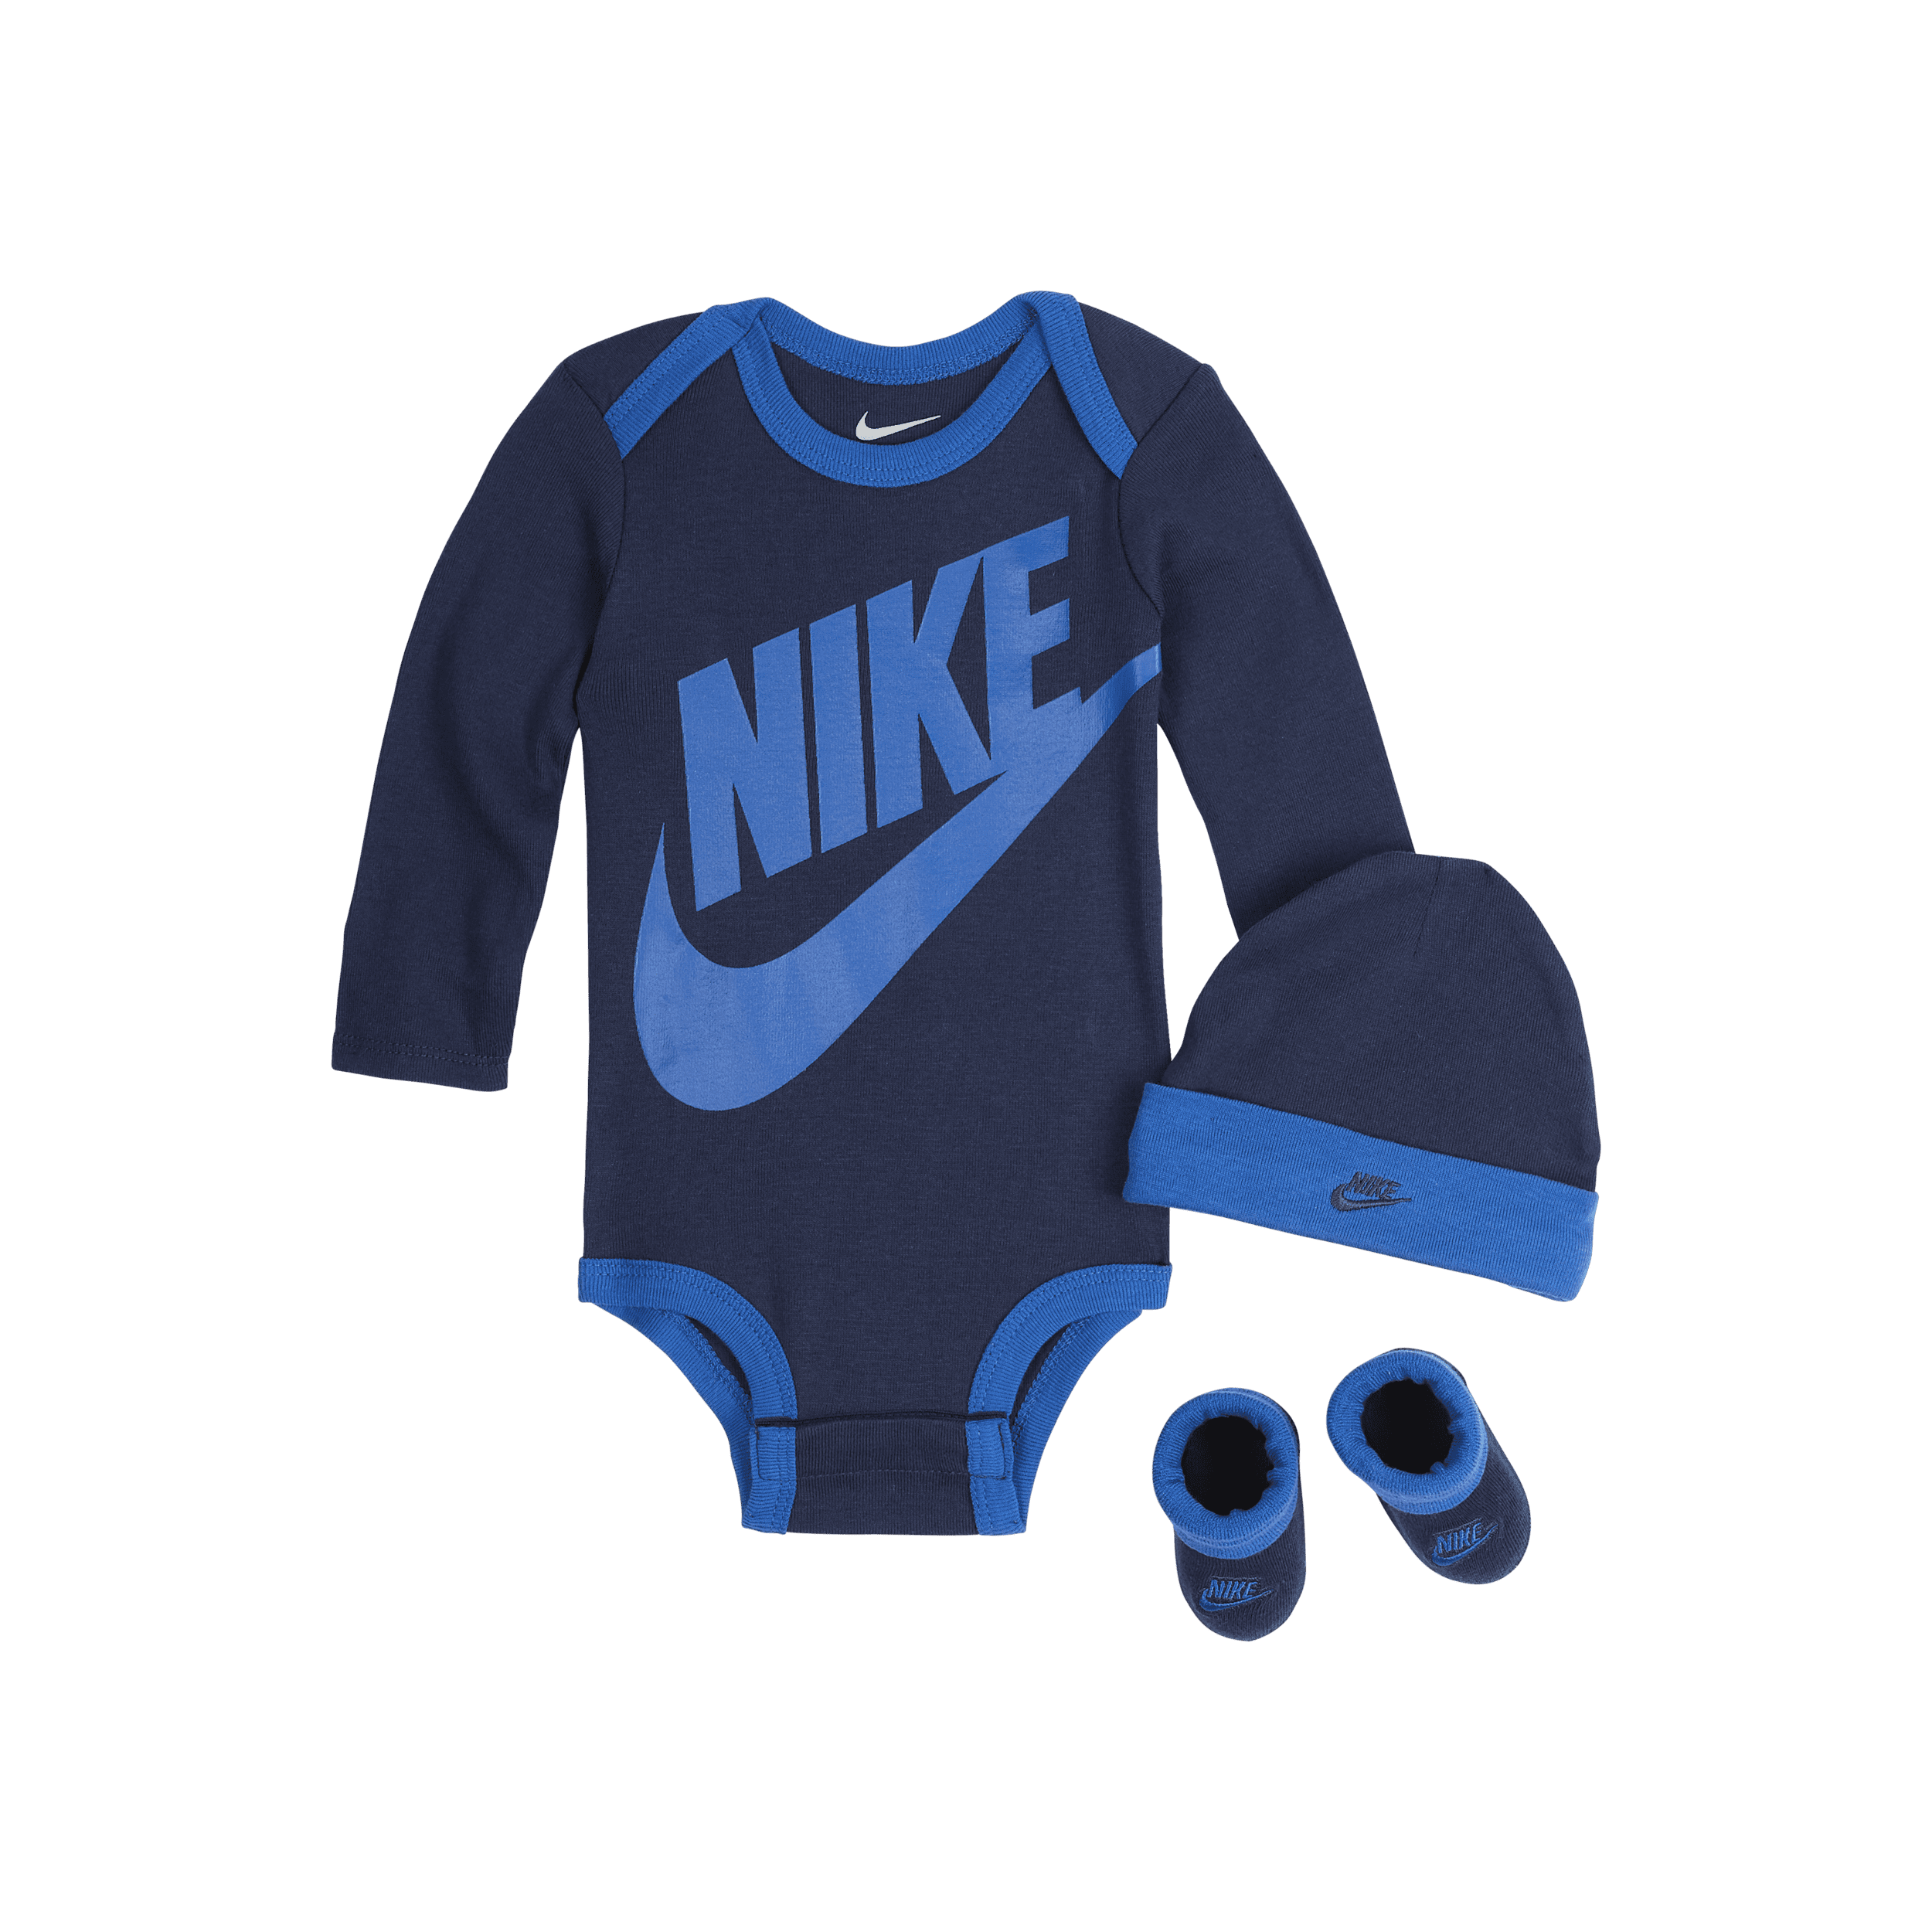 Nike Driedelige babyset (0-6 maanden) - Blauw